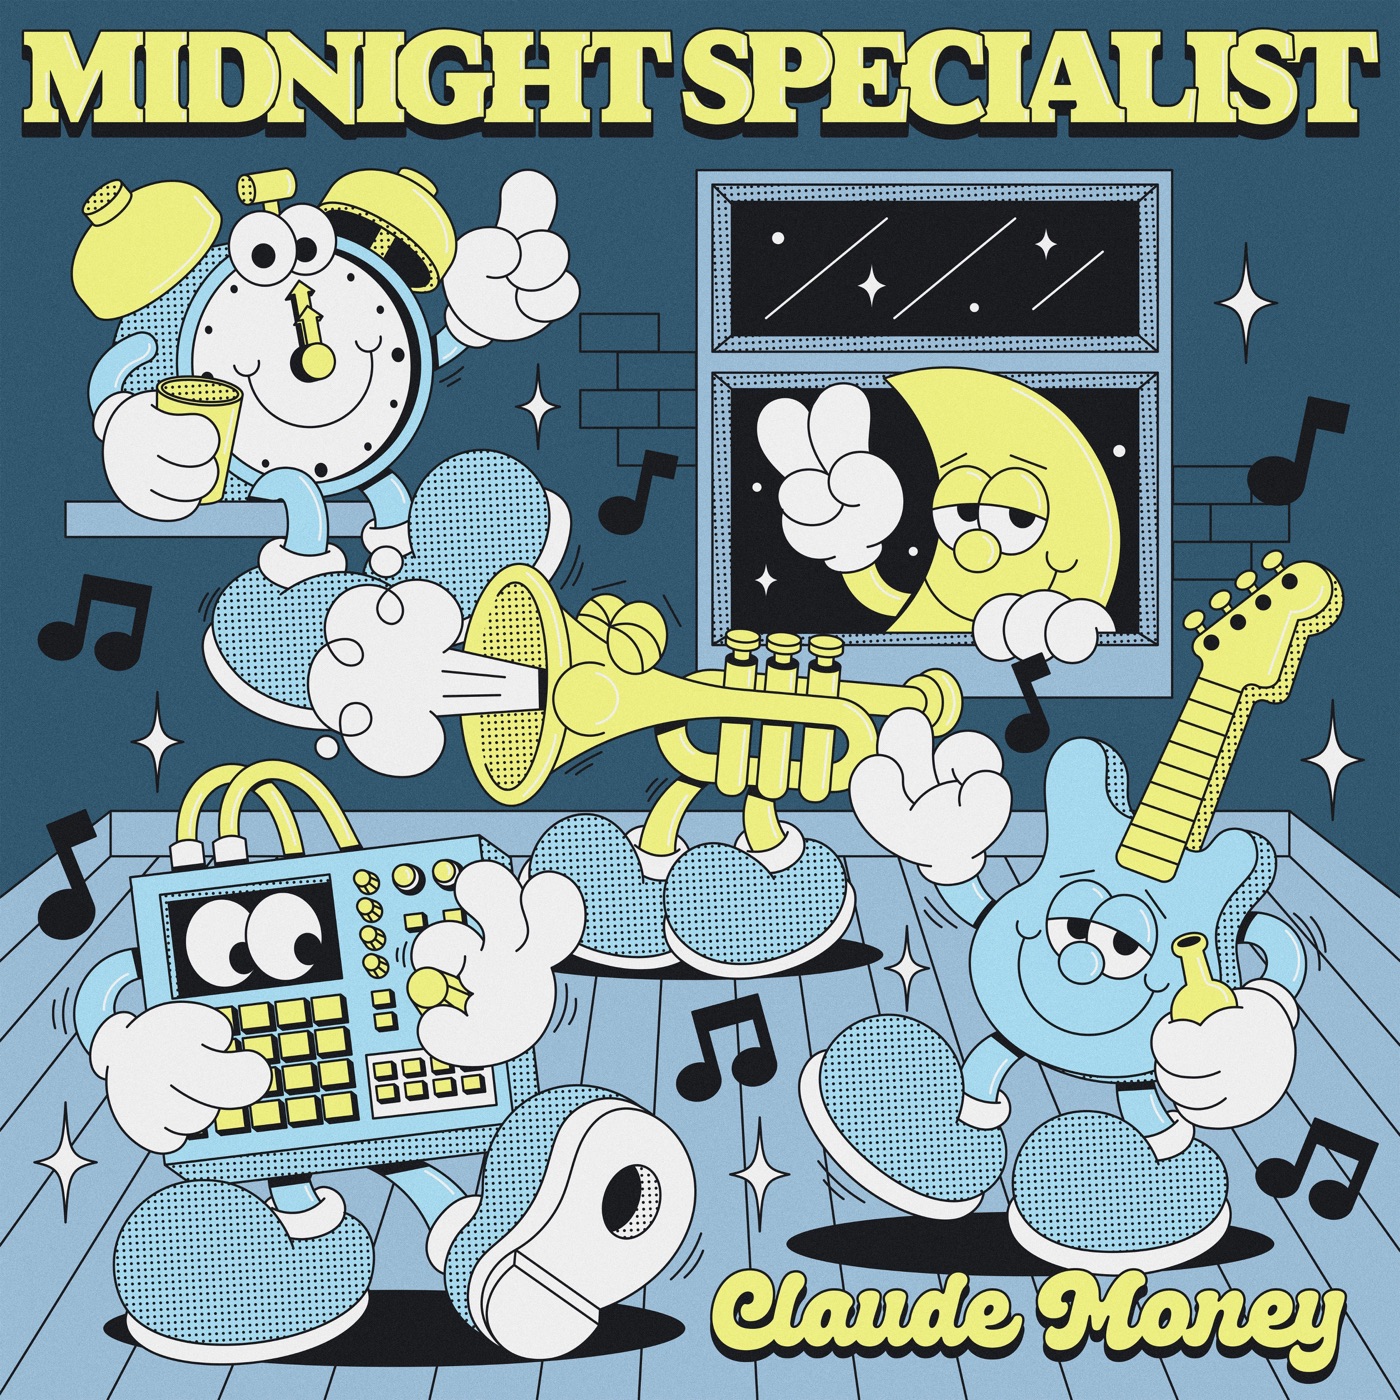 Midnight Specialist by Claude Money